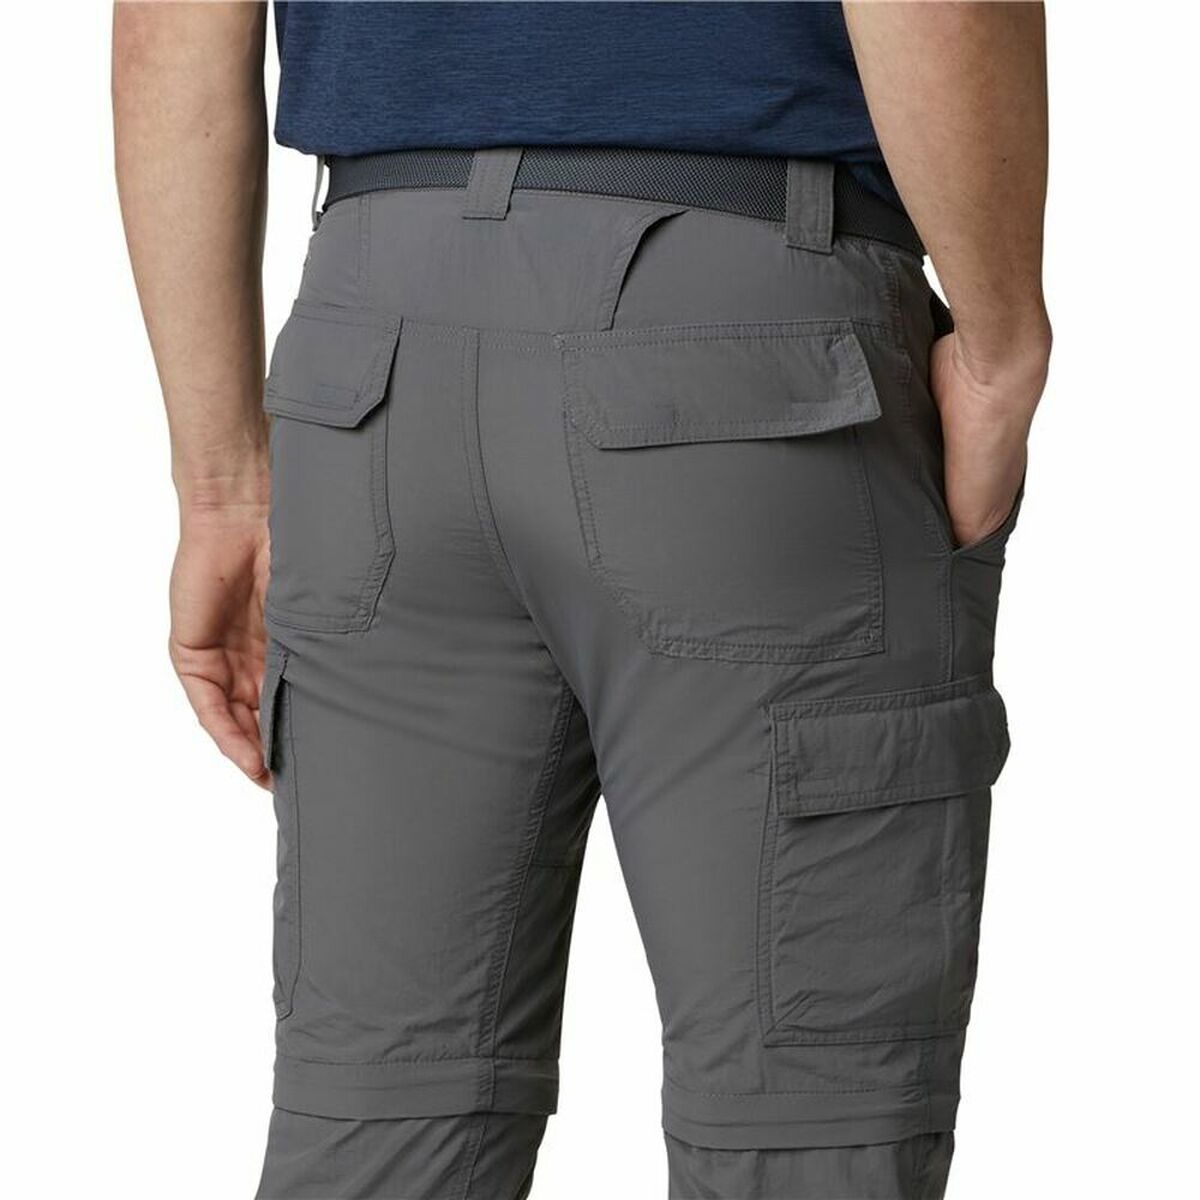 Pantalone Lungo Sportivo Columbia Silver Ridge Convertible Grigio Uomo